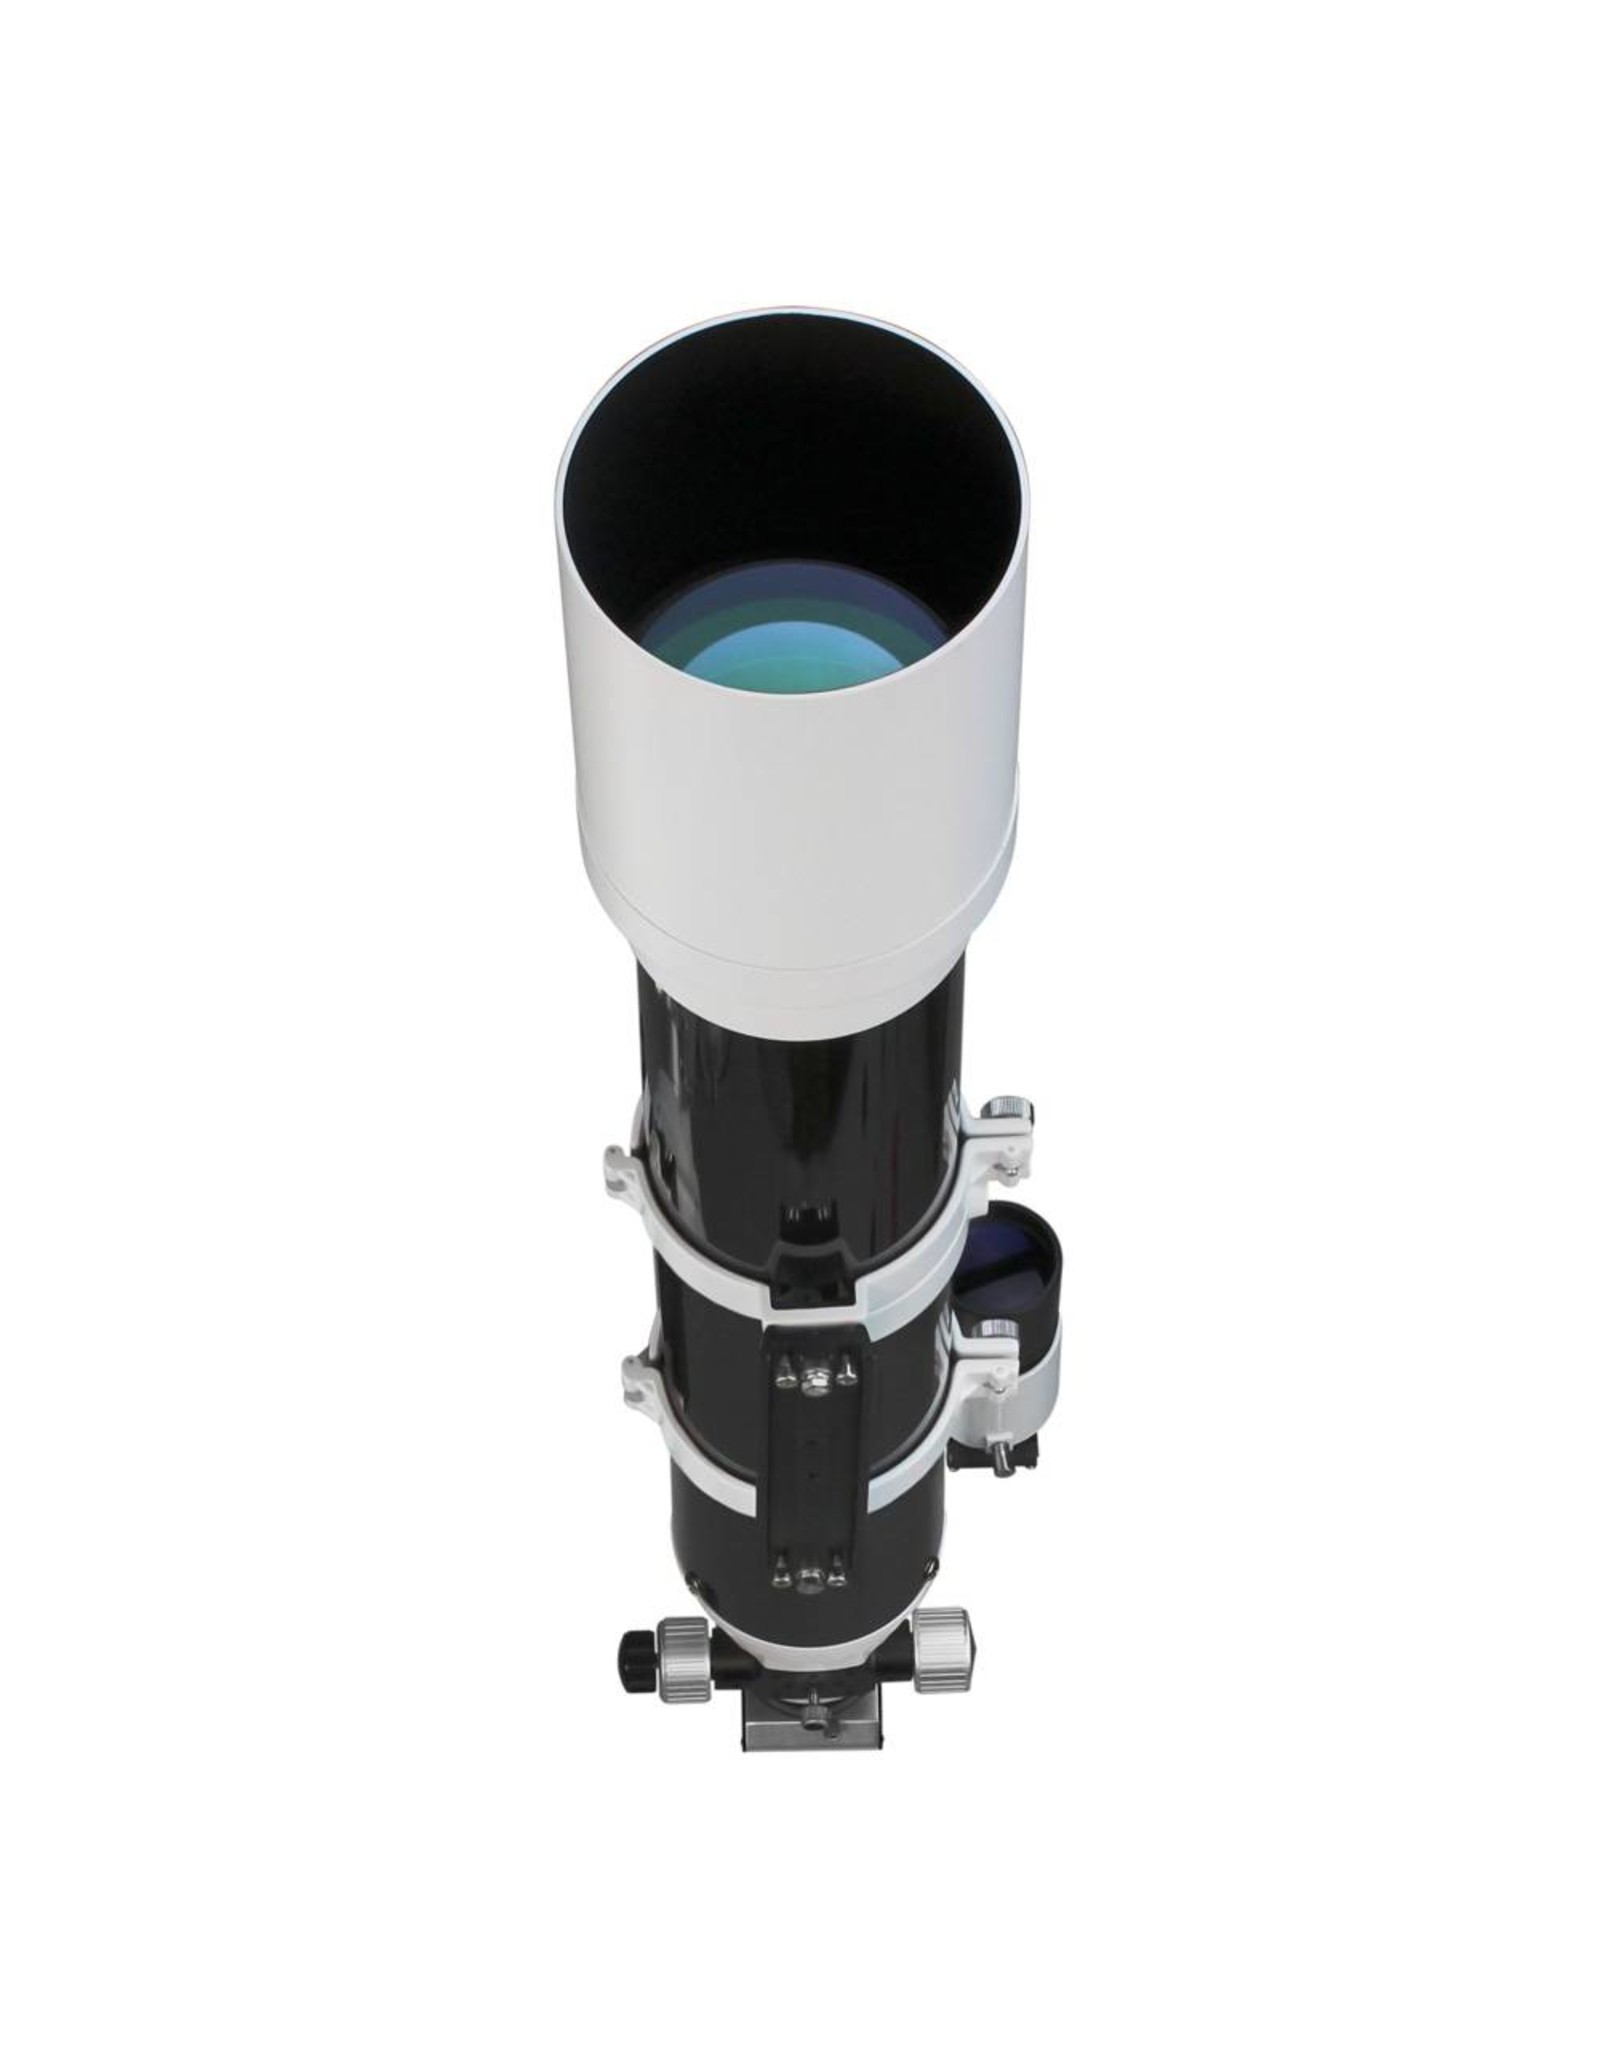 Sky-Watcher Sky-Watcher Evostar 120mm Doublet APO Refractor